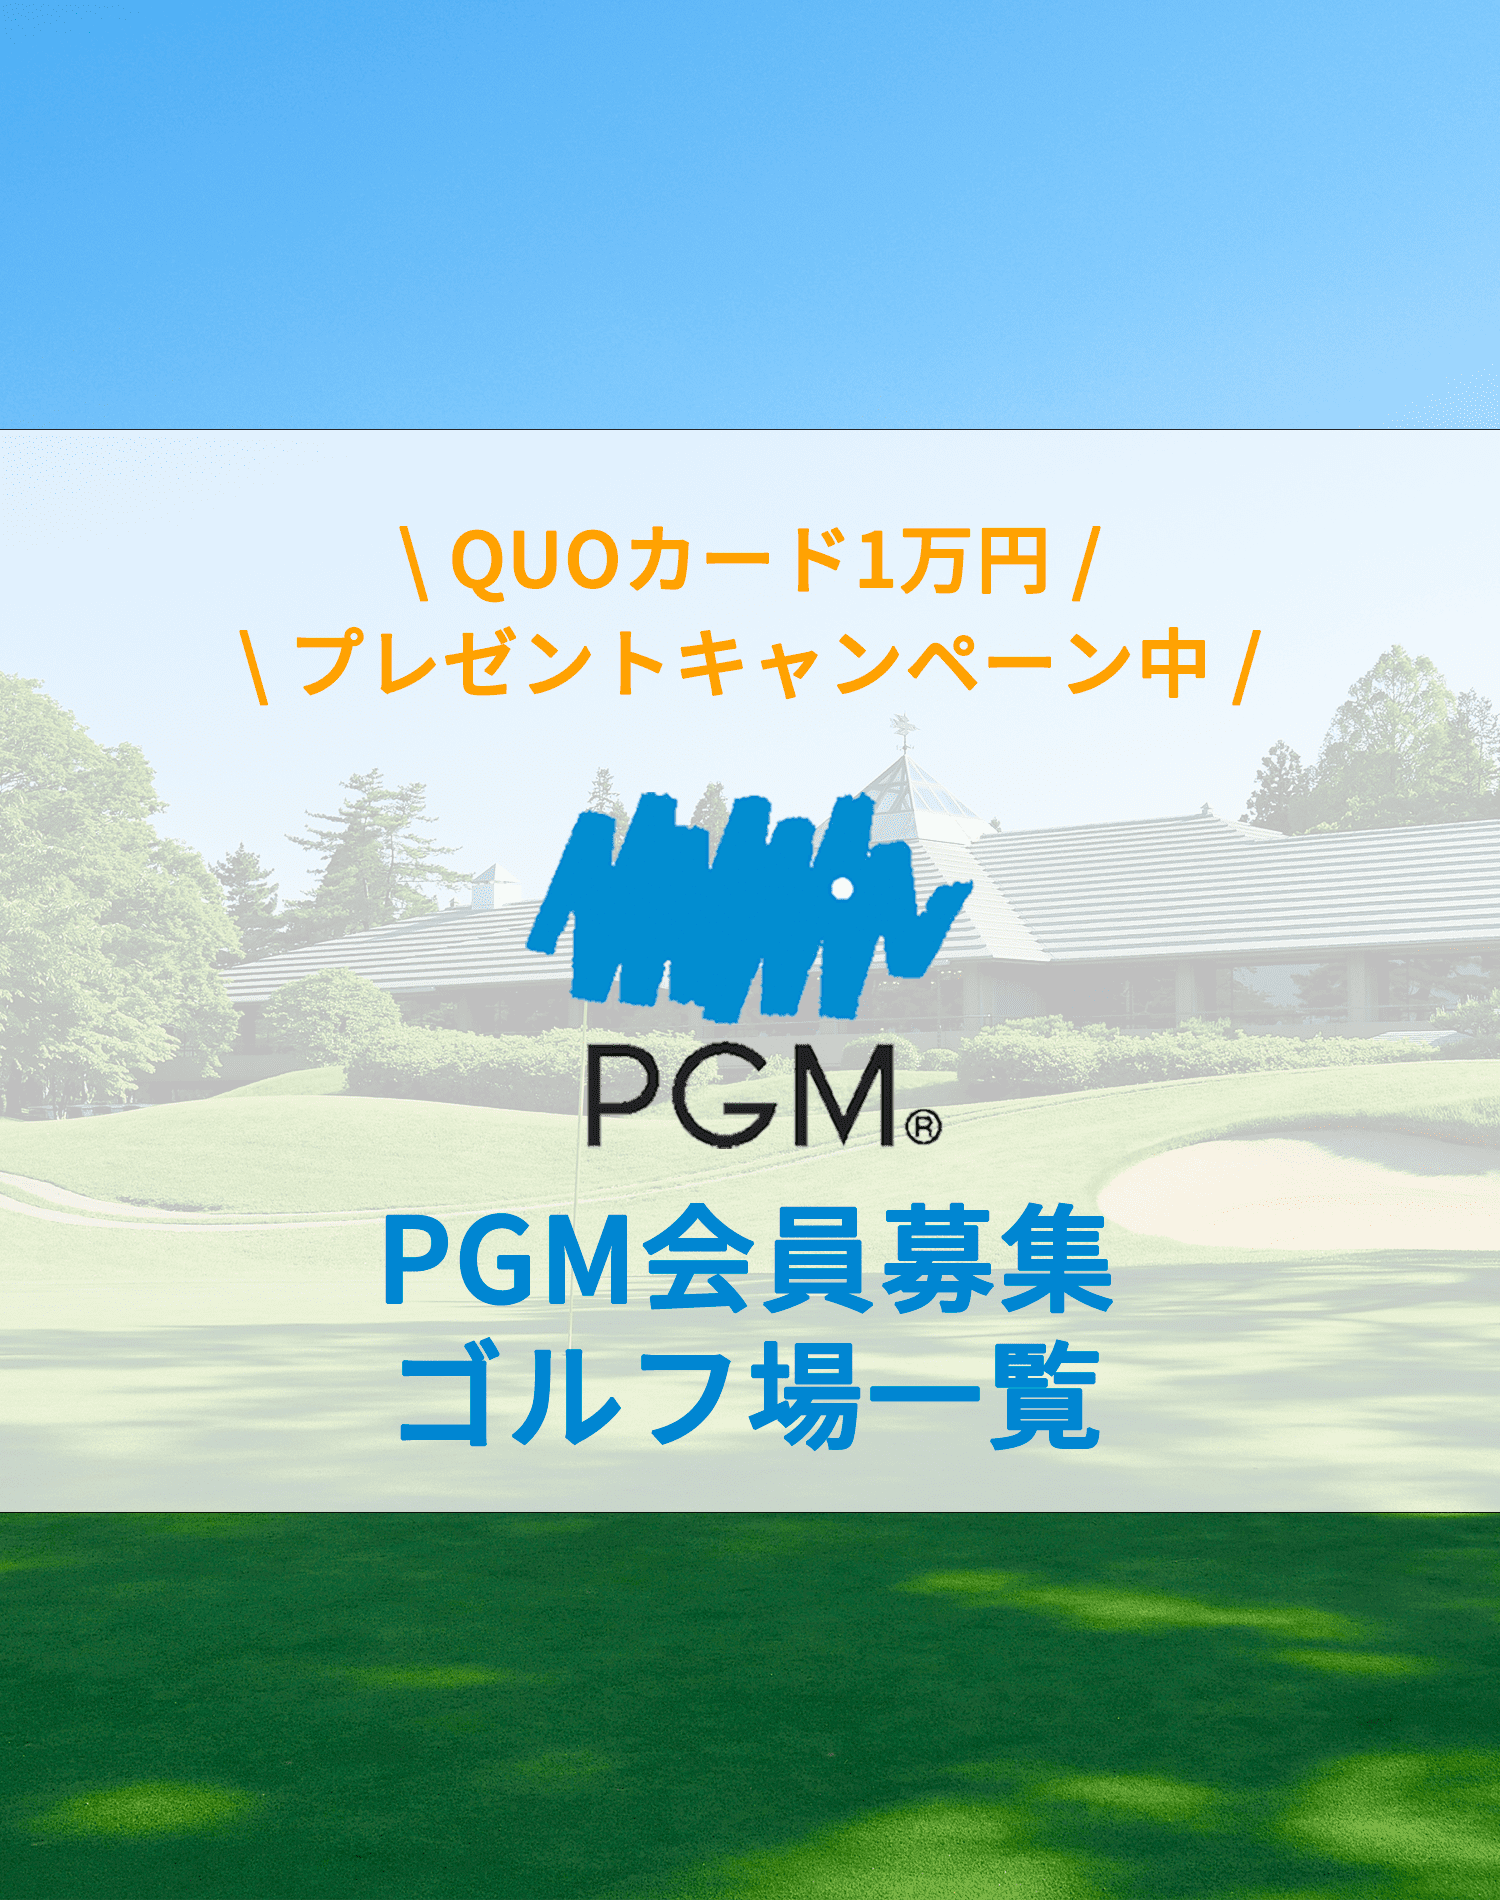 PGM会員募集ゴルフ場一覧 ｜ ゴルフ会員権業界最大手の実績と業界一の